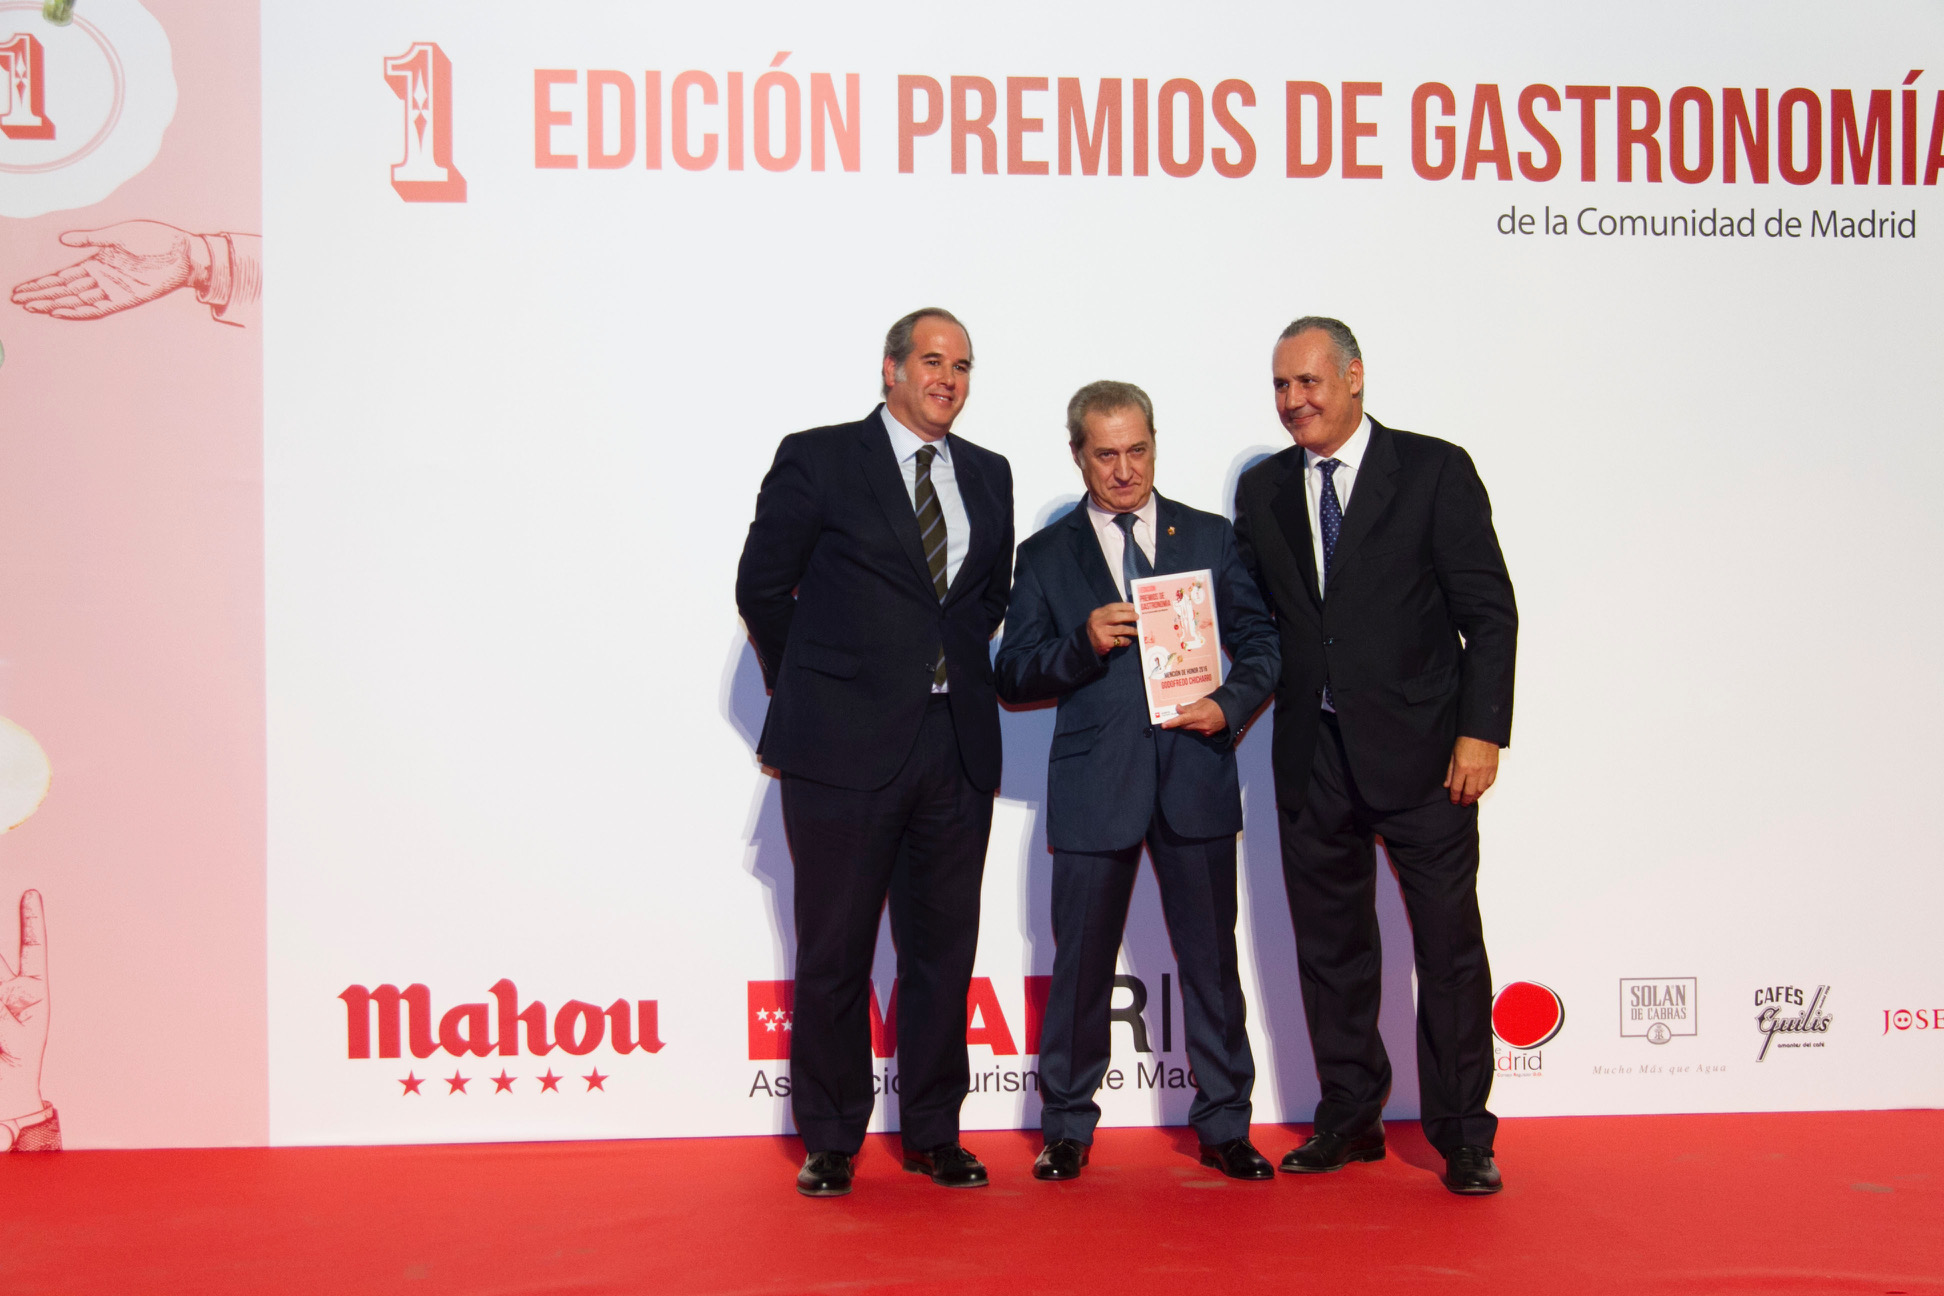 images Premios1 - Premios de la Academia Madrileña de Gastronomía